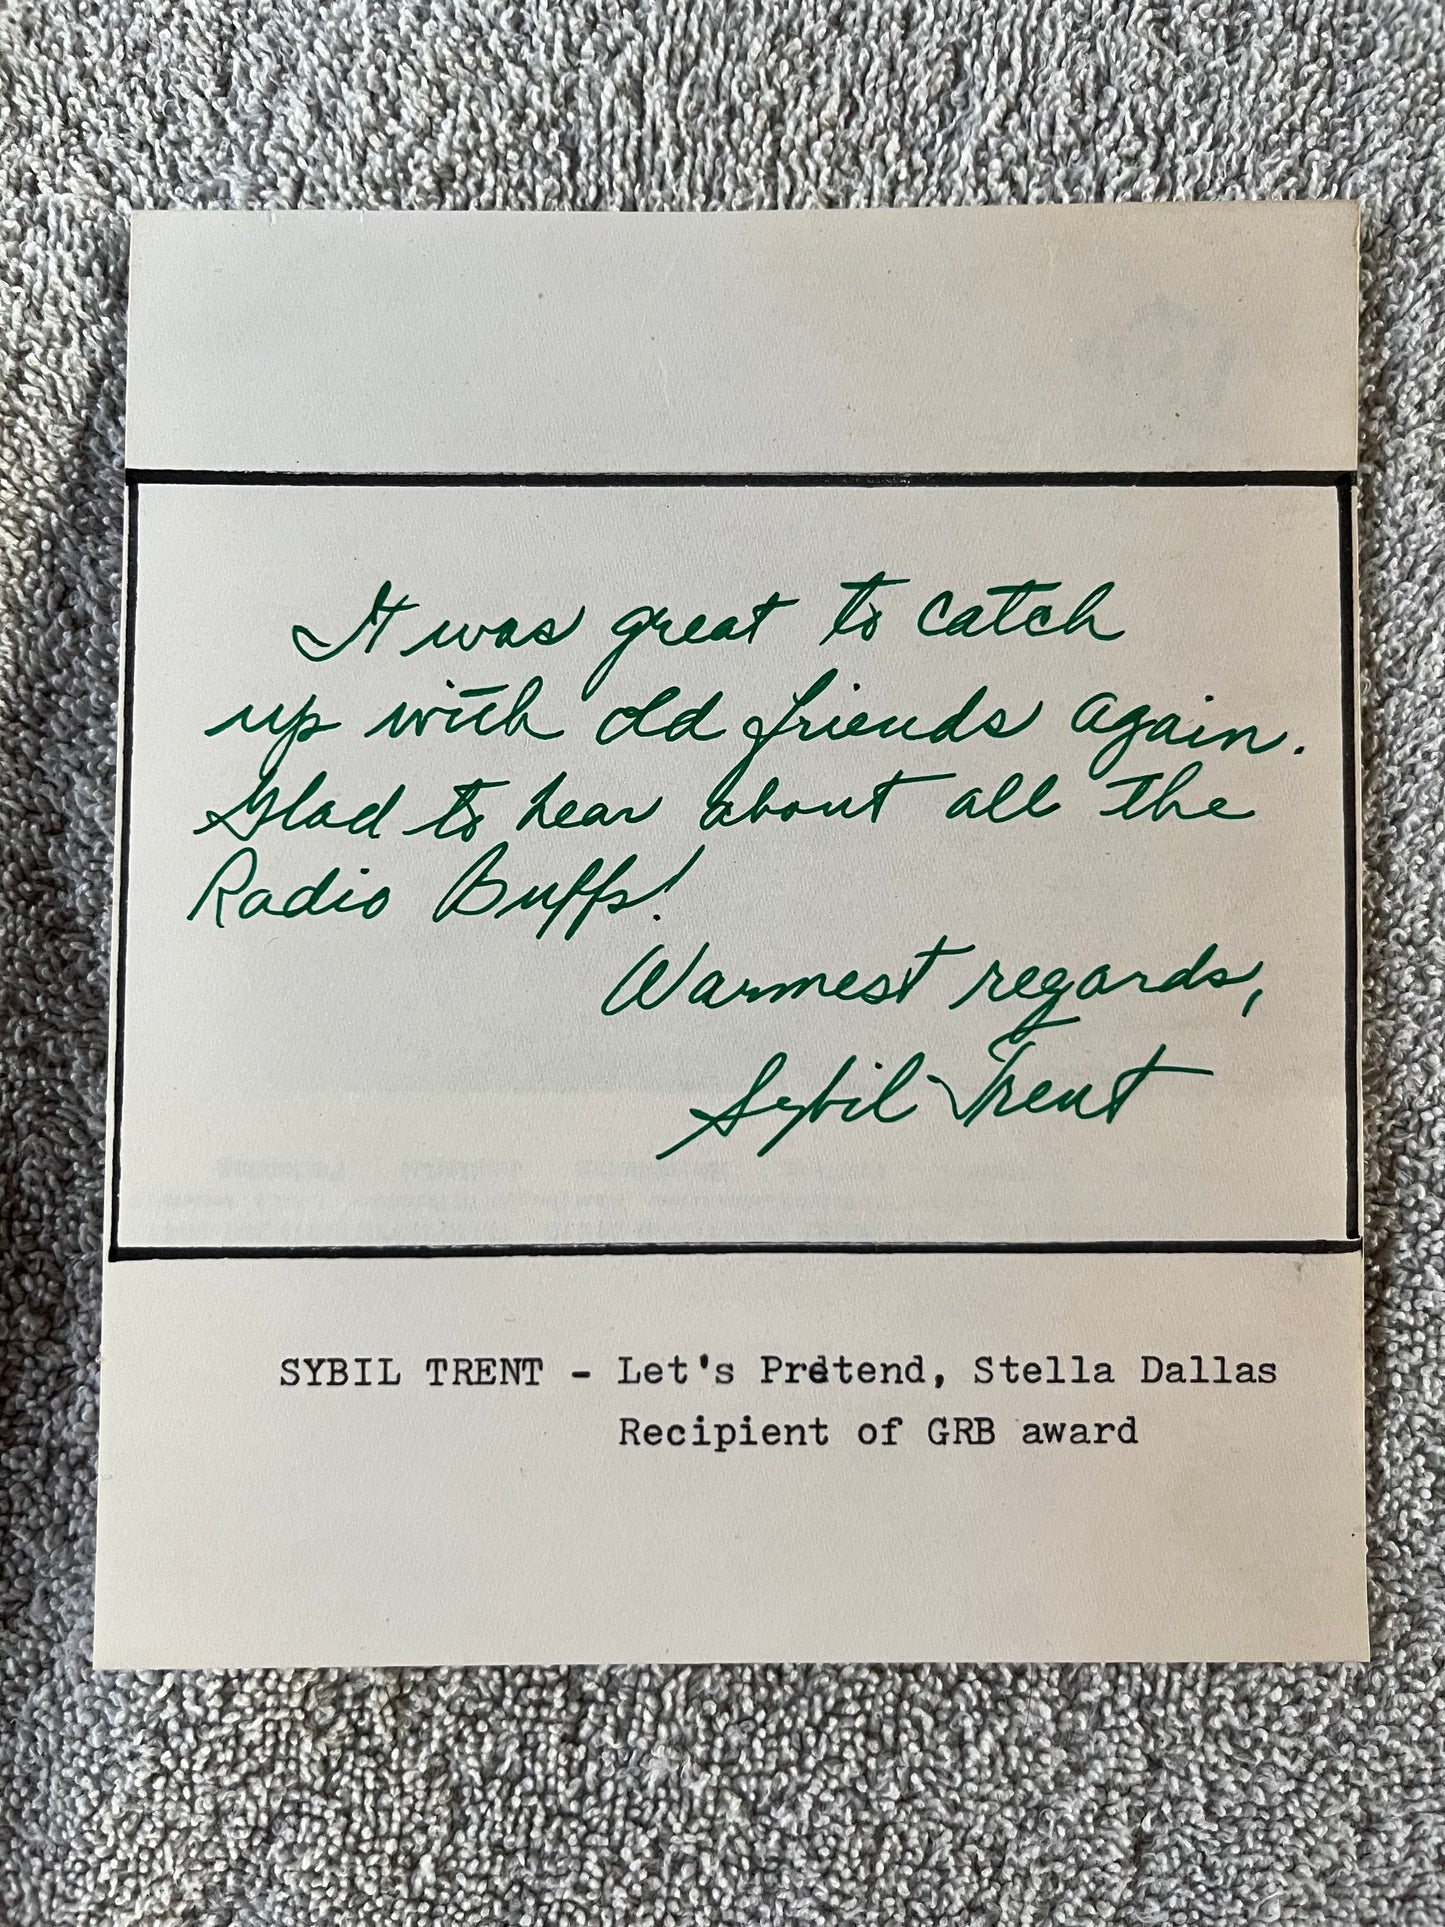 SYBIL TRENT of STELLA DALLAS fame (Autograph)